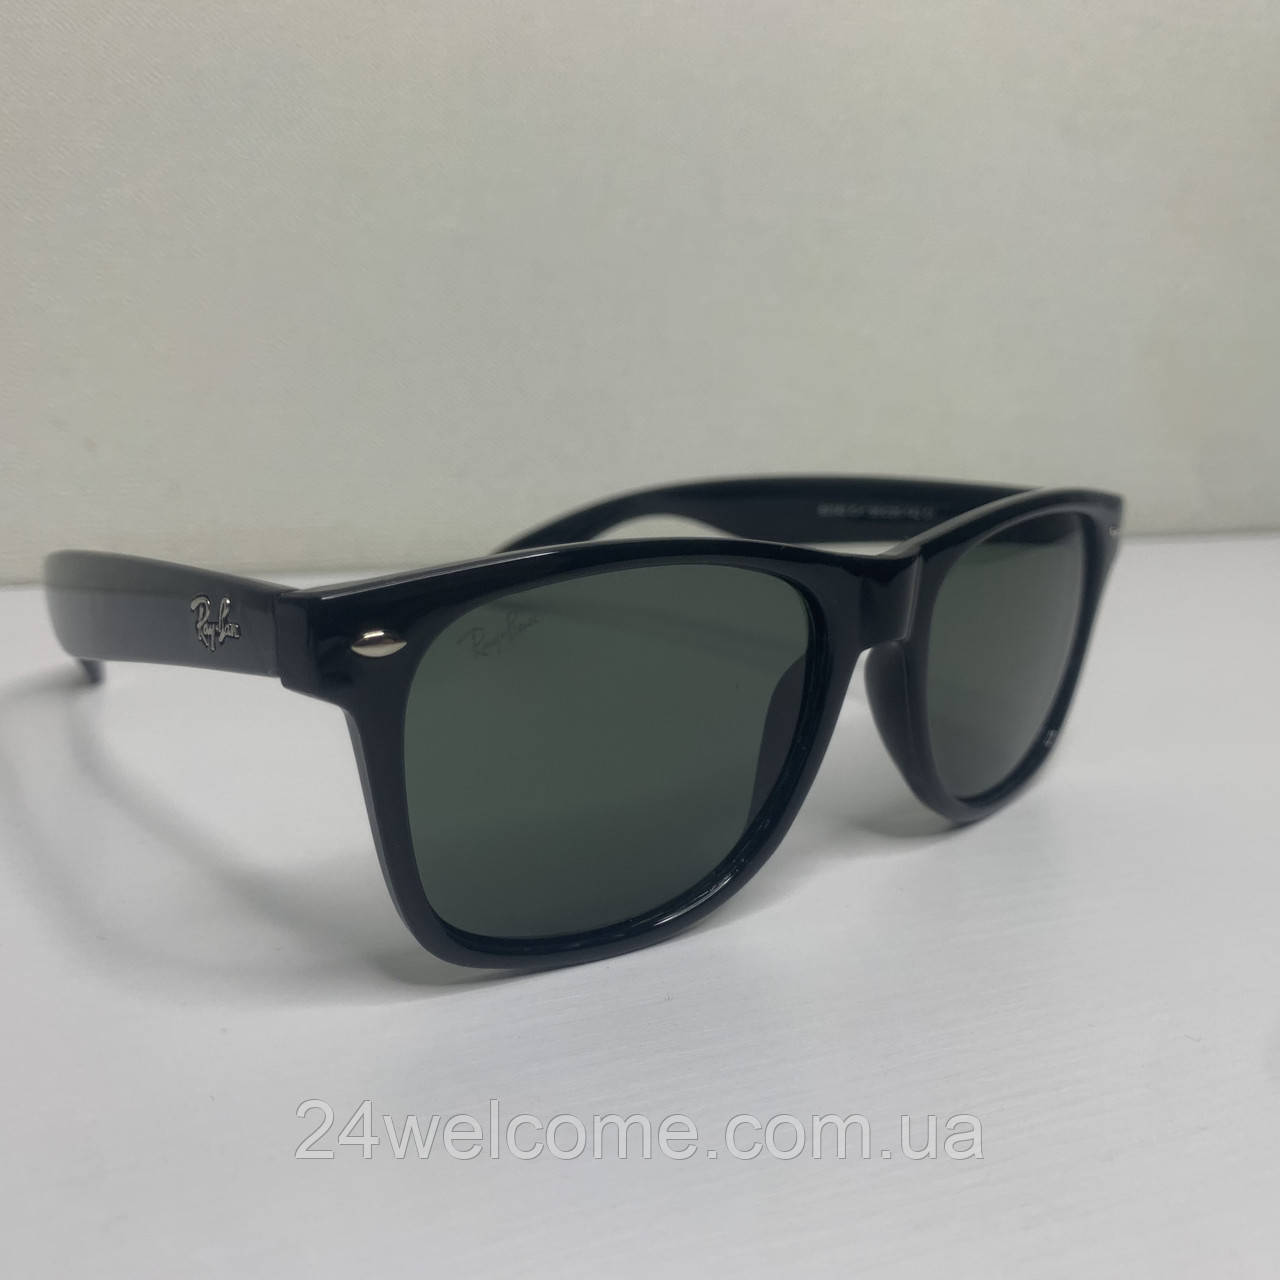 Сонцезахисні окуляри унісекс Ray Ban 2140 Wayfarer чорний глянець лінза скло